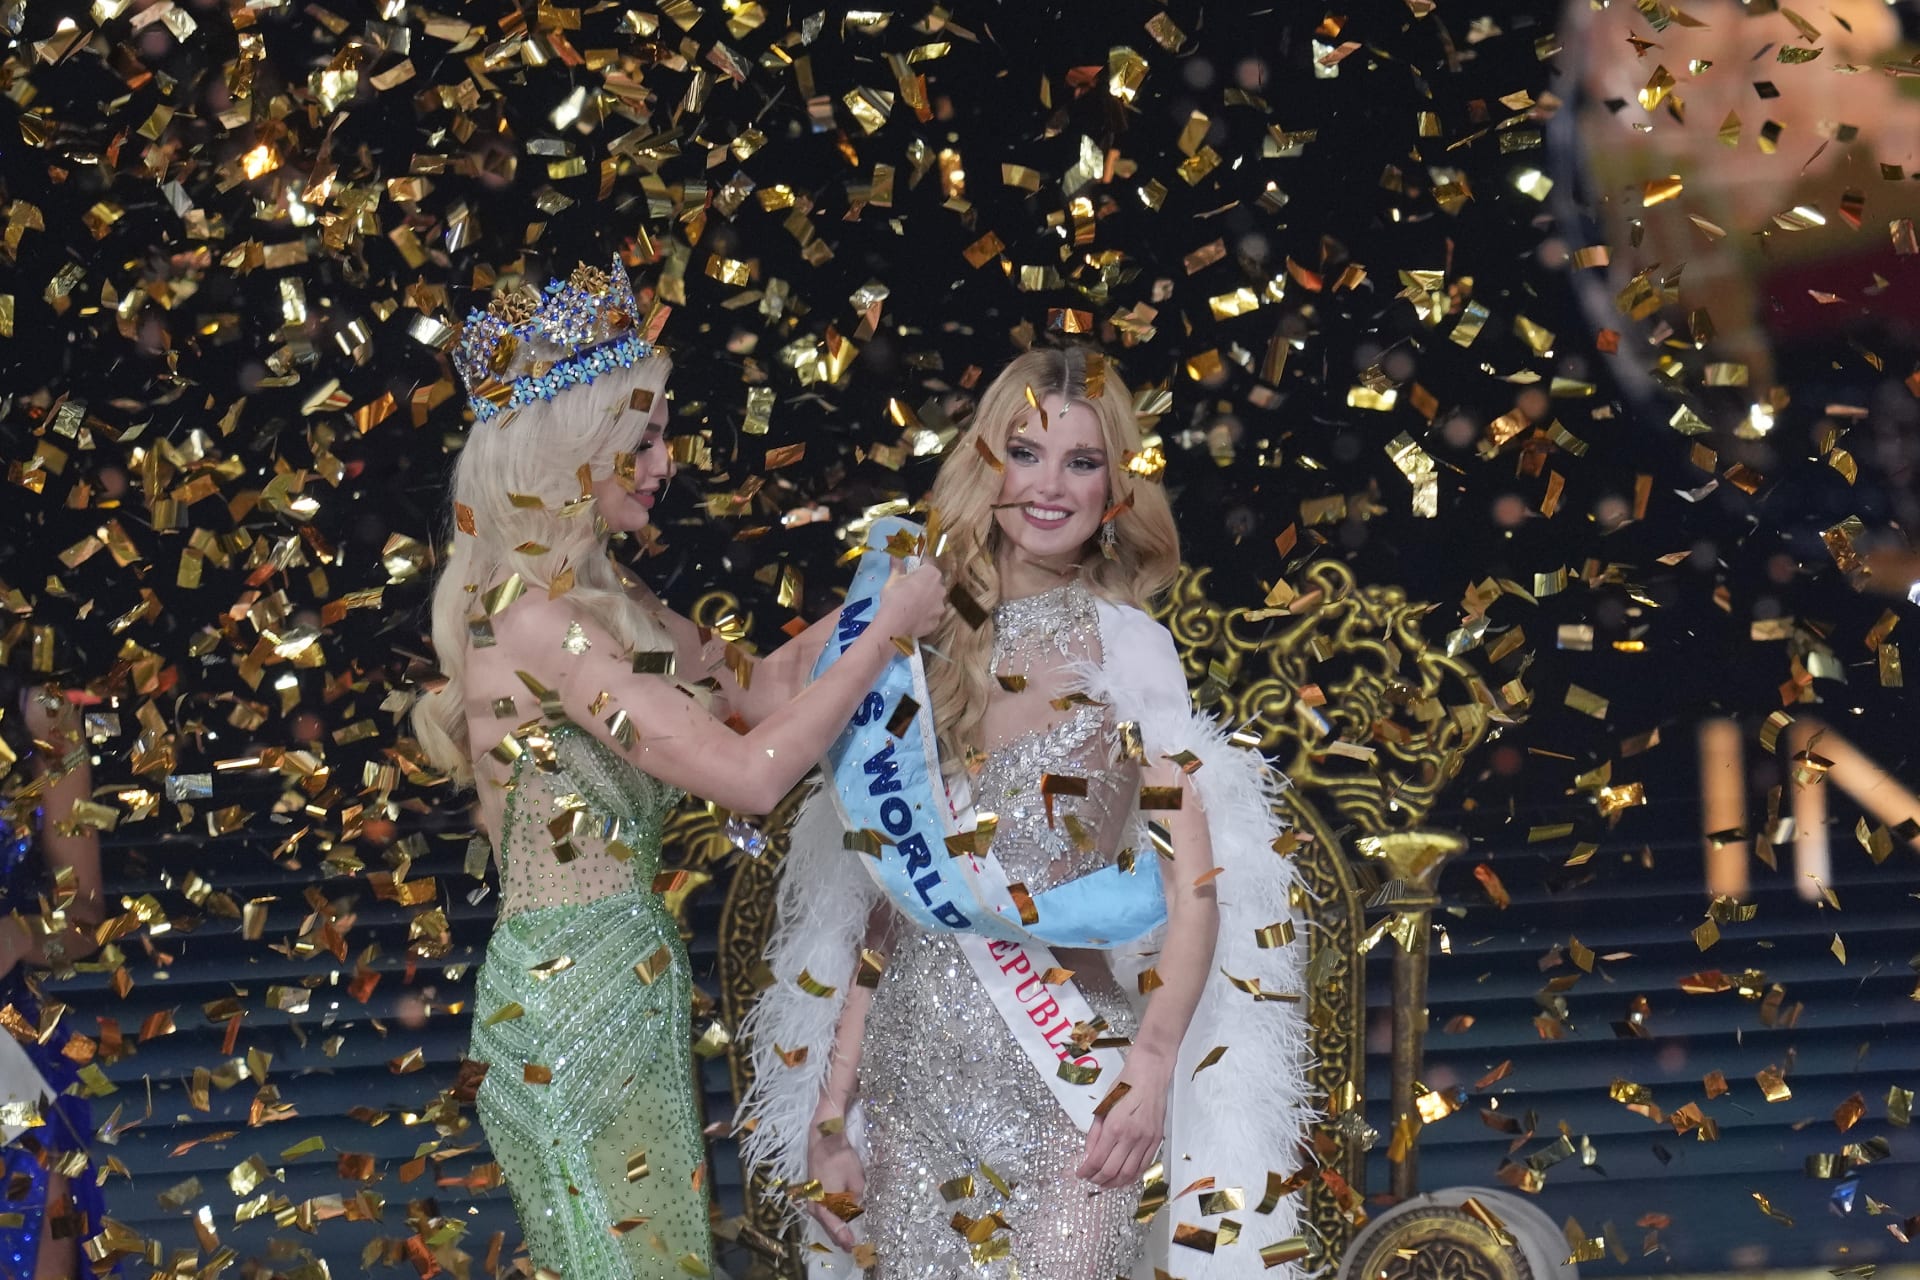 Pyszková je druhou Českou, která prestižní titul Miss World získala.